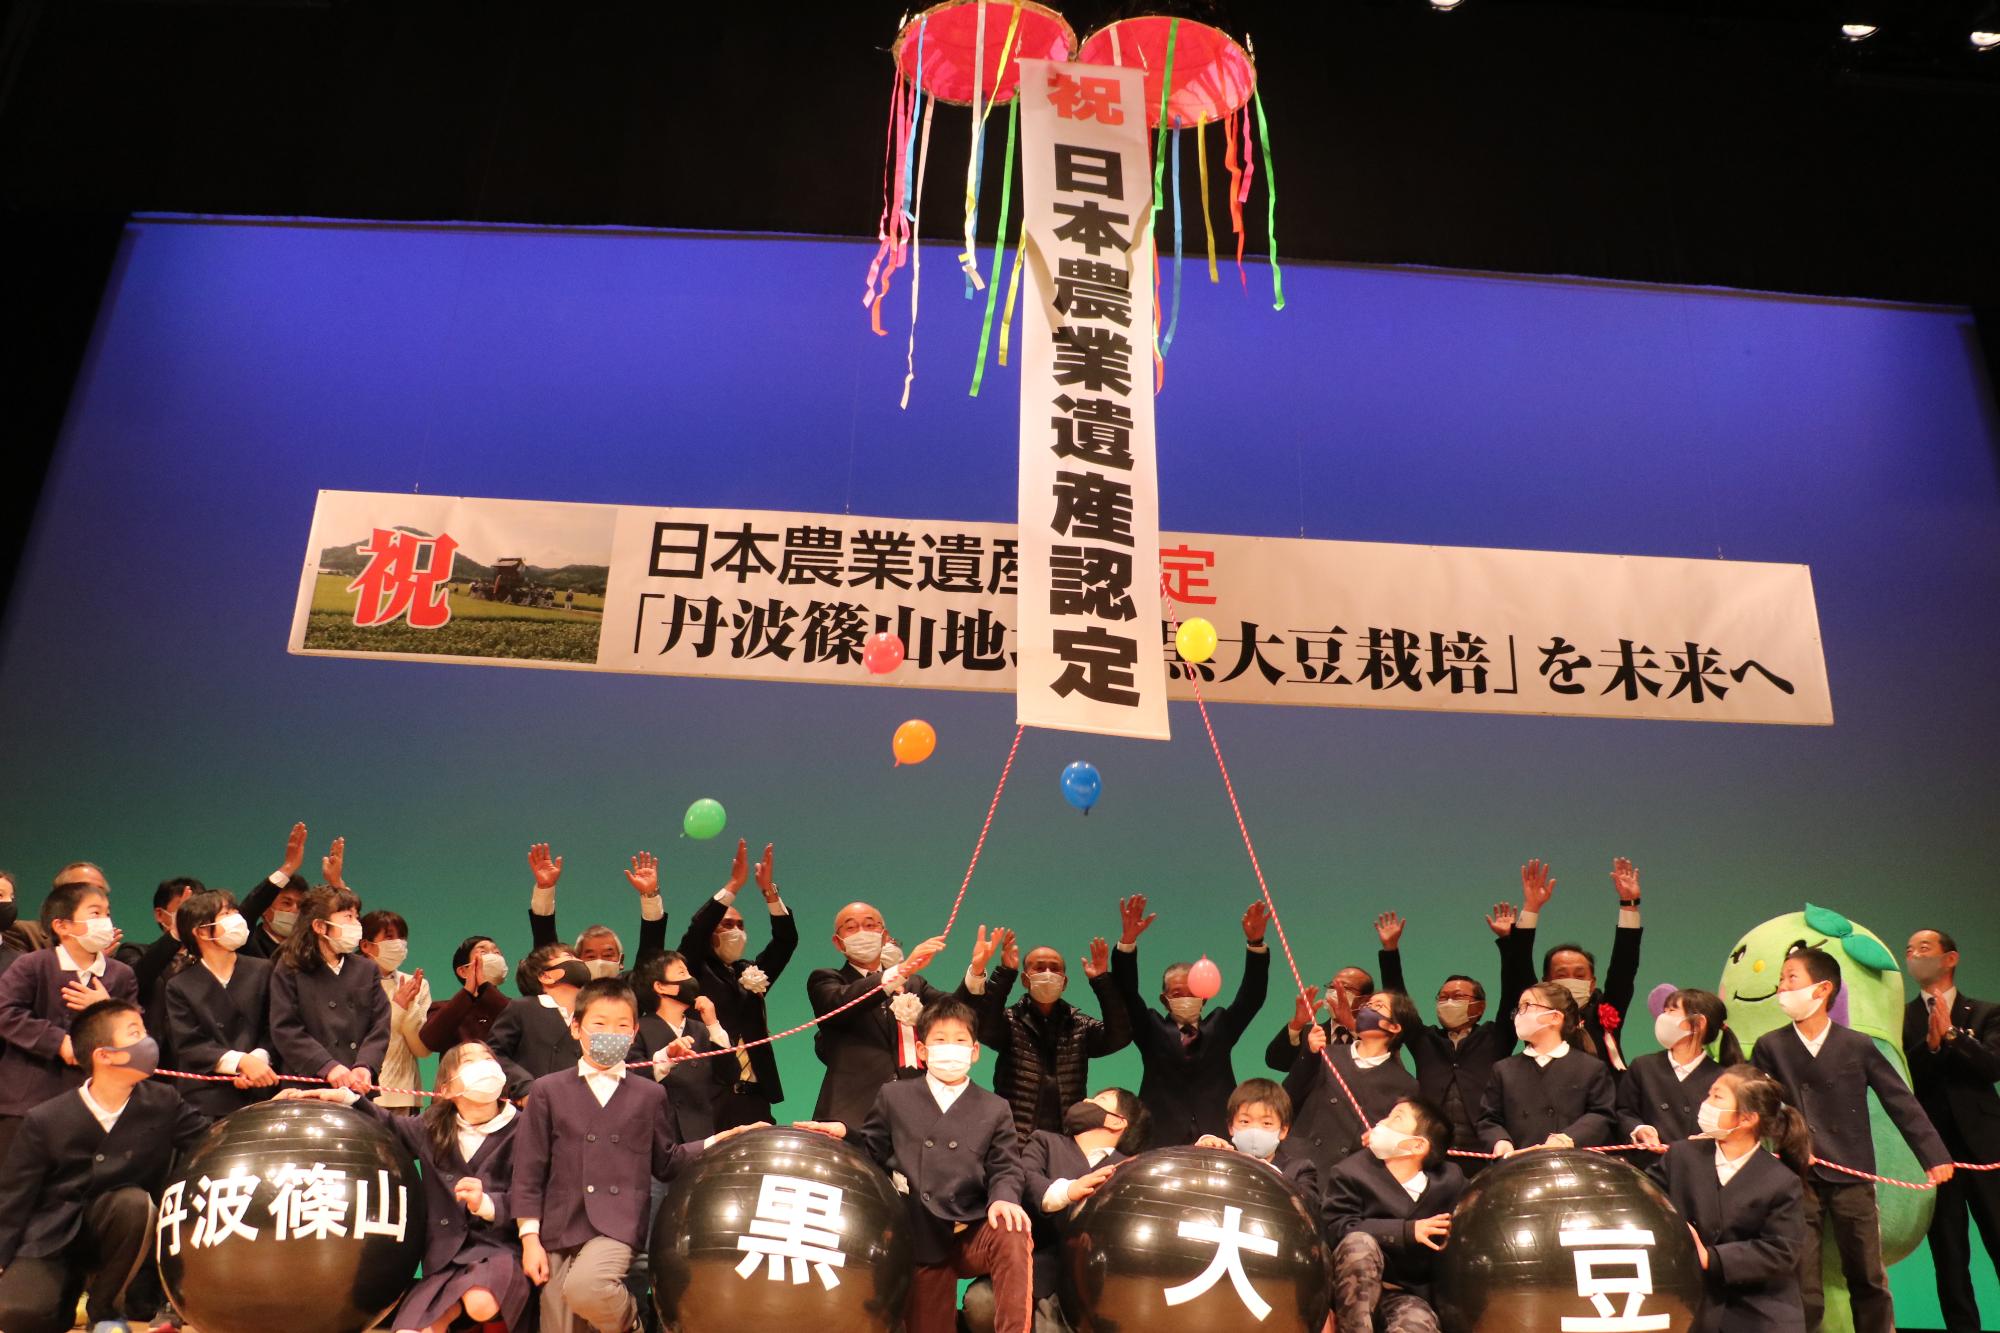 舞台上で、日本農業遺産認定のくす玉を関係者のみなさんでひもをひっぱって割っている。